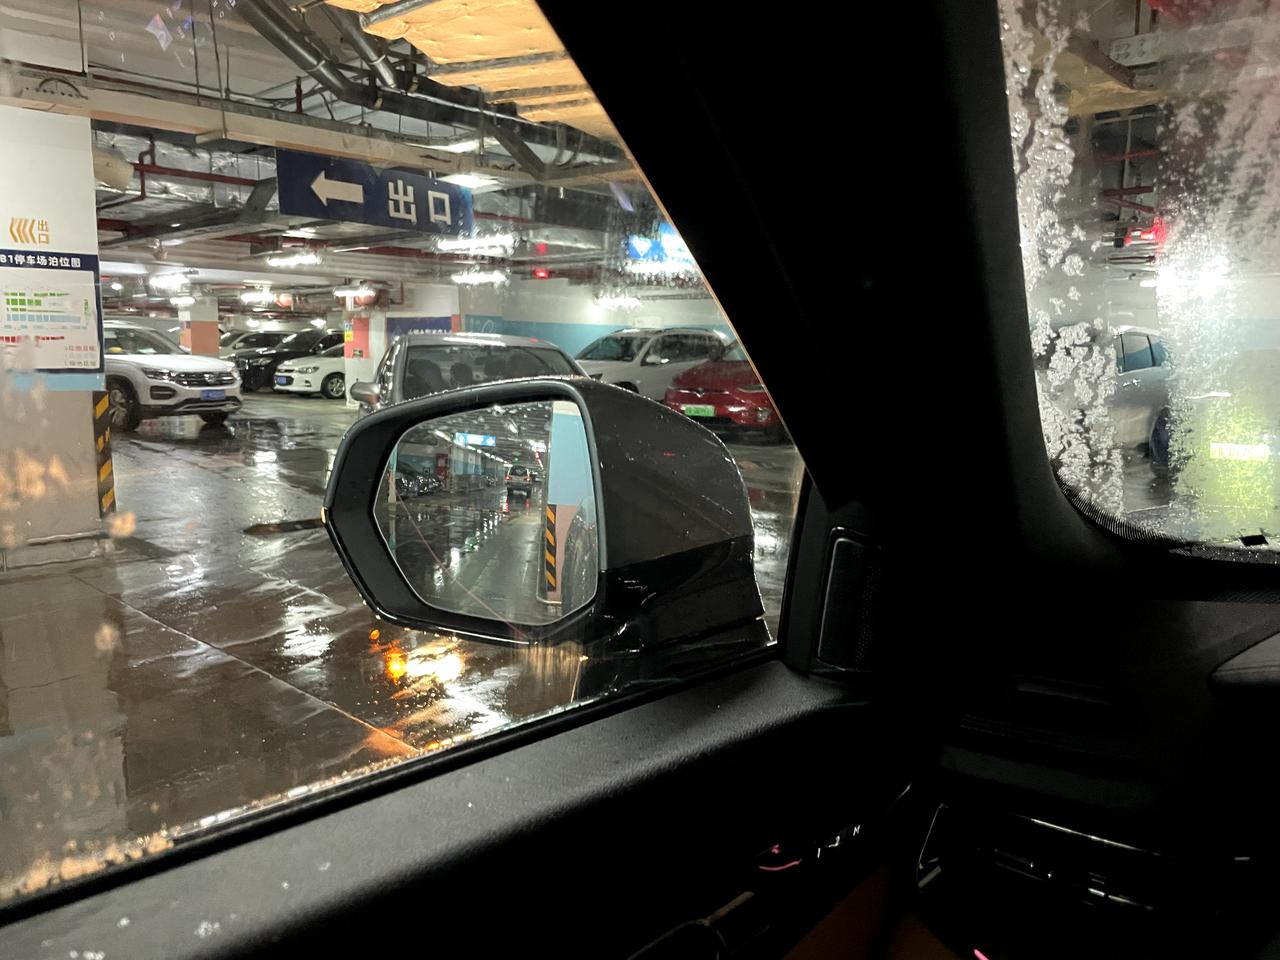 领克09 天热，下雨，进了地下停车场，左边的玻璃没有雾气，右边根本看不到后视镜。怎么破？